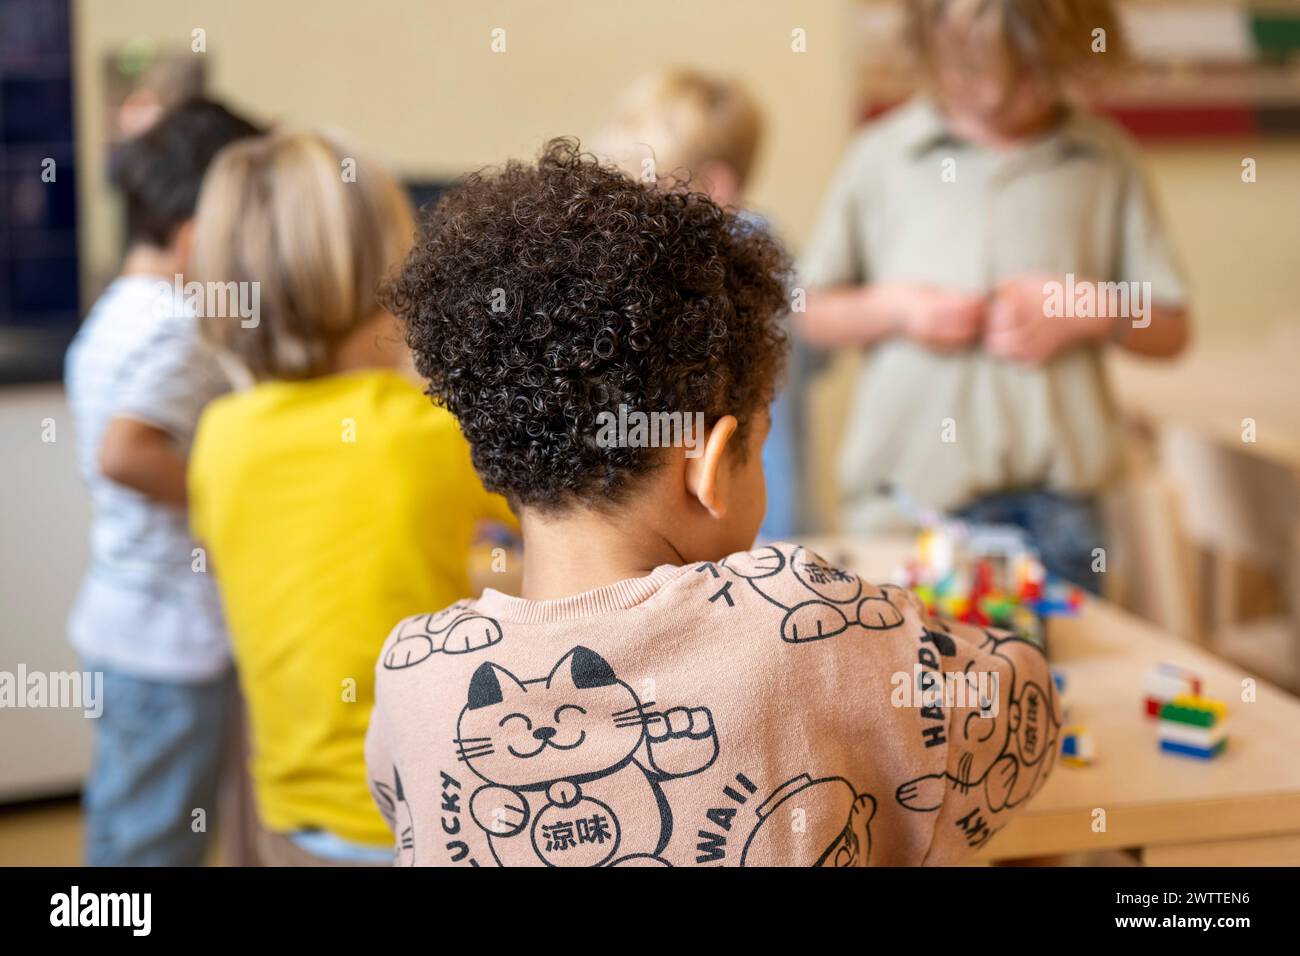 Neugieriges Kind, das Gleichaltrige während des Spielens beobachtet. Stockfoto